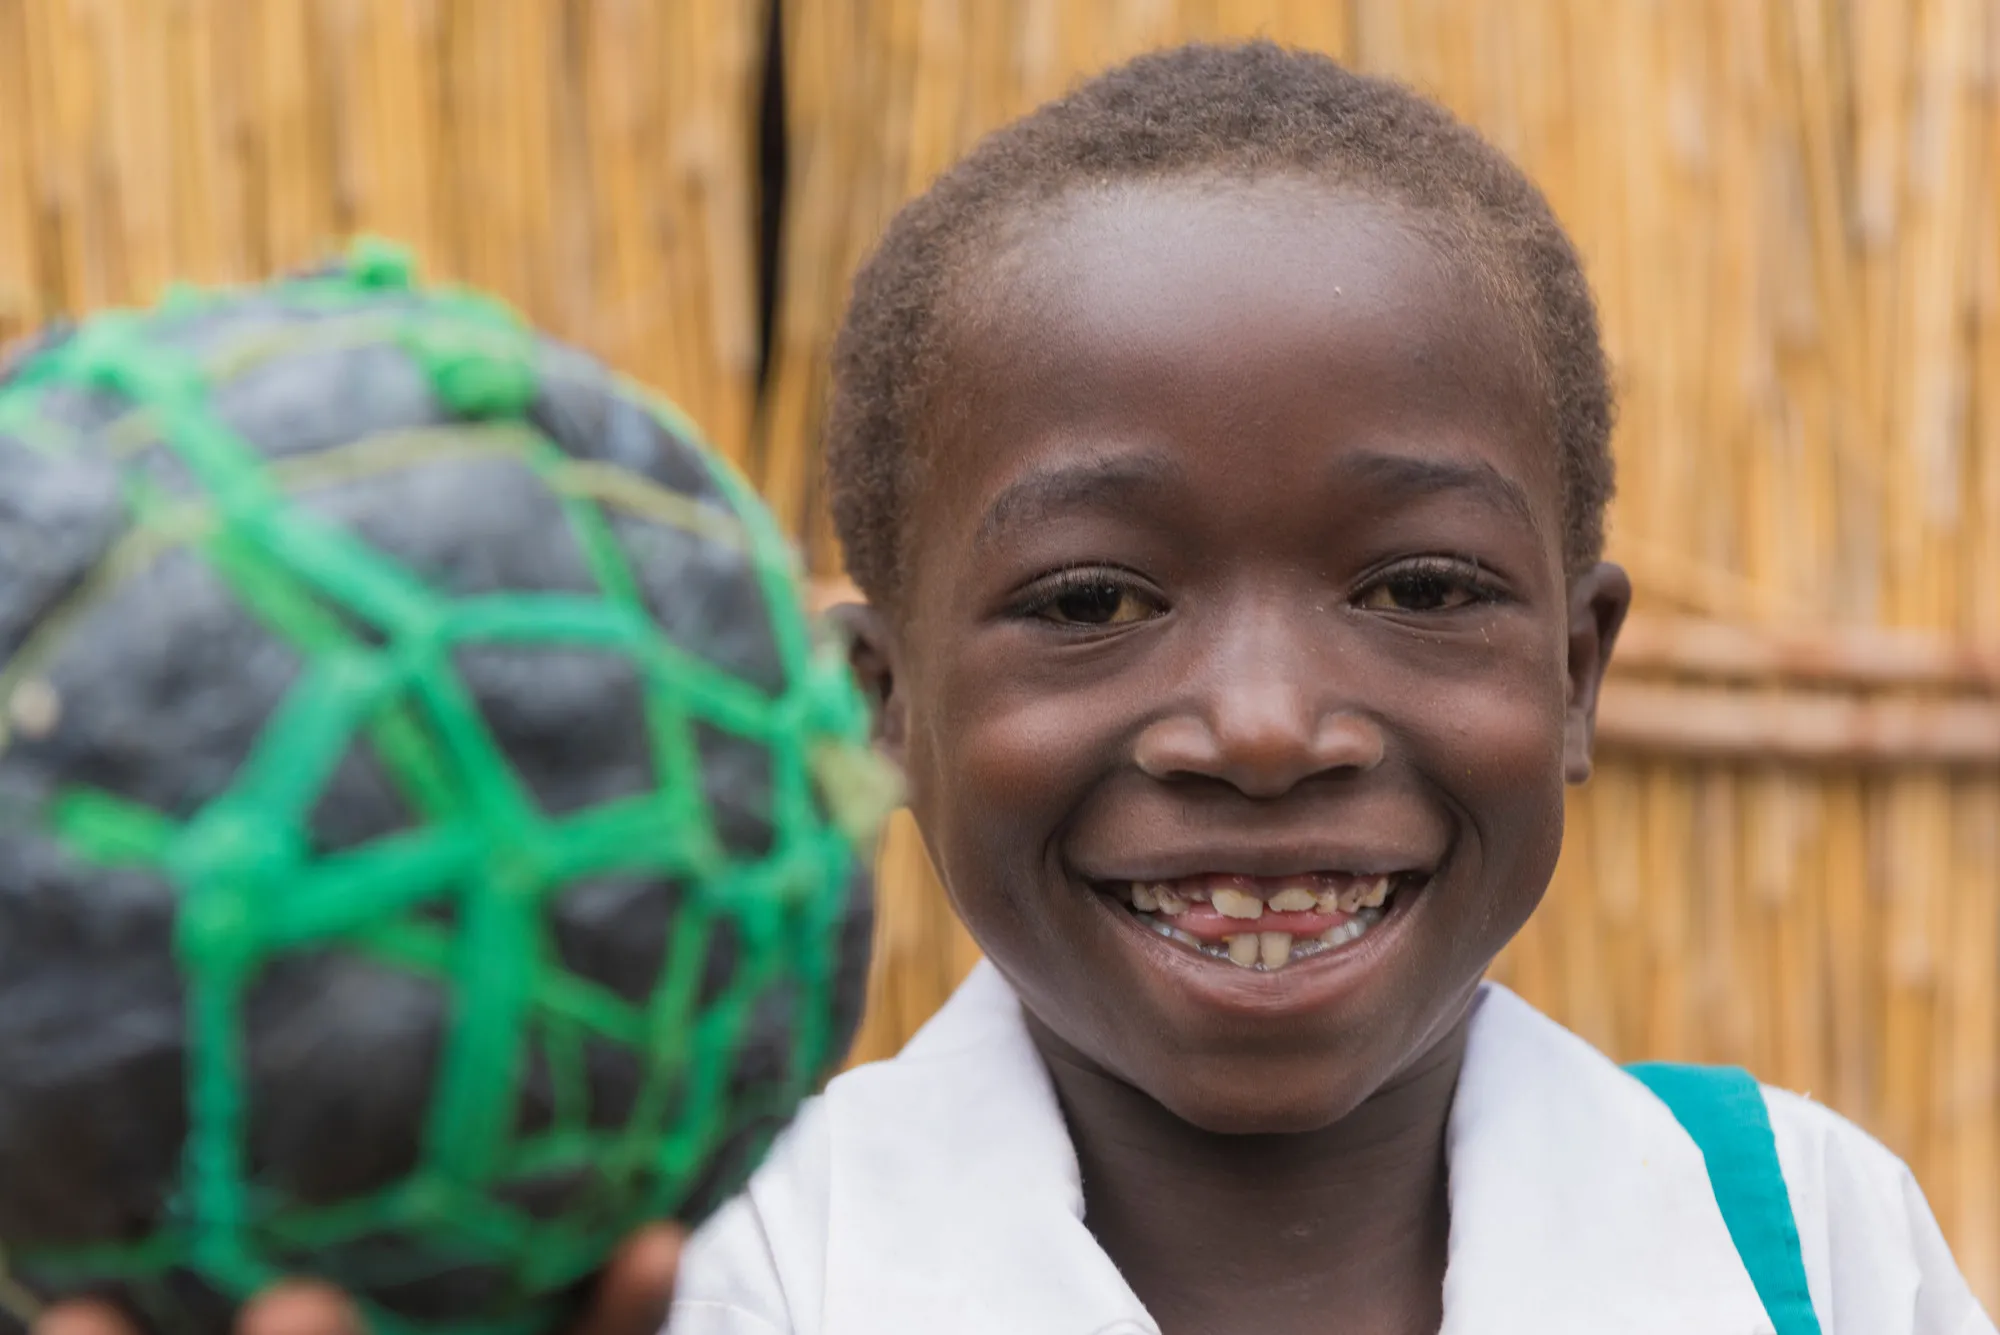 Uma jovem sorri segurando uma bola de futebol improvisada feita de barbante e sacos plásticos.